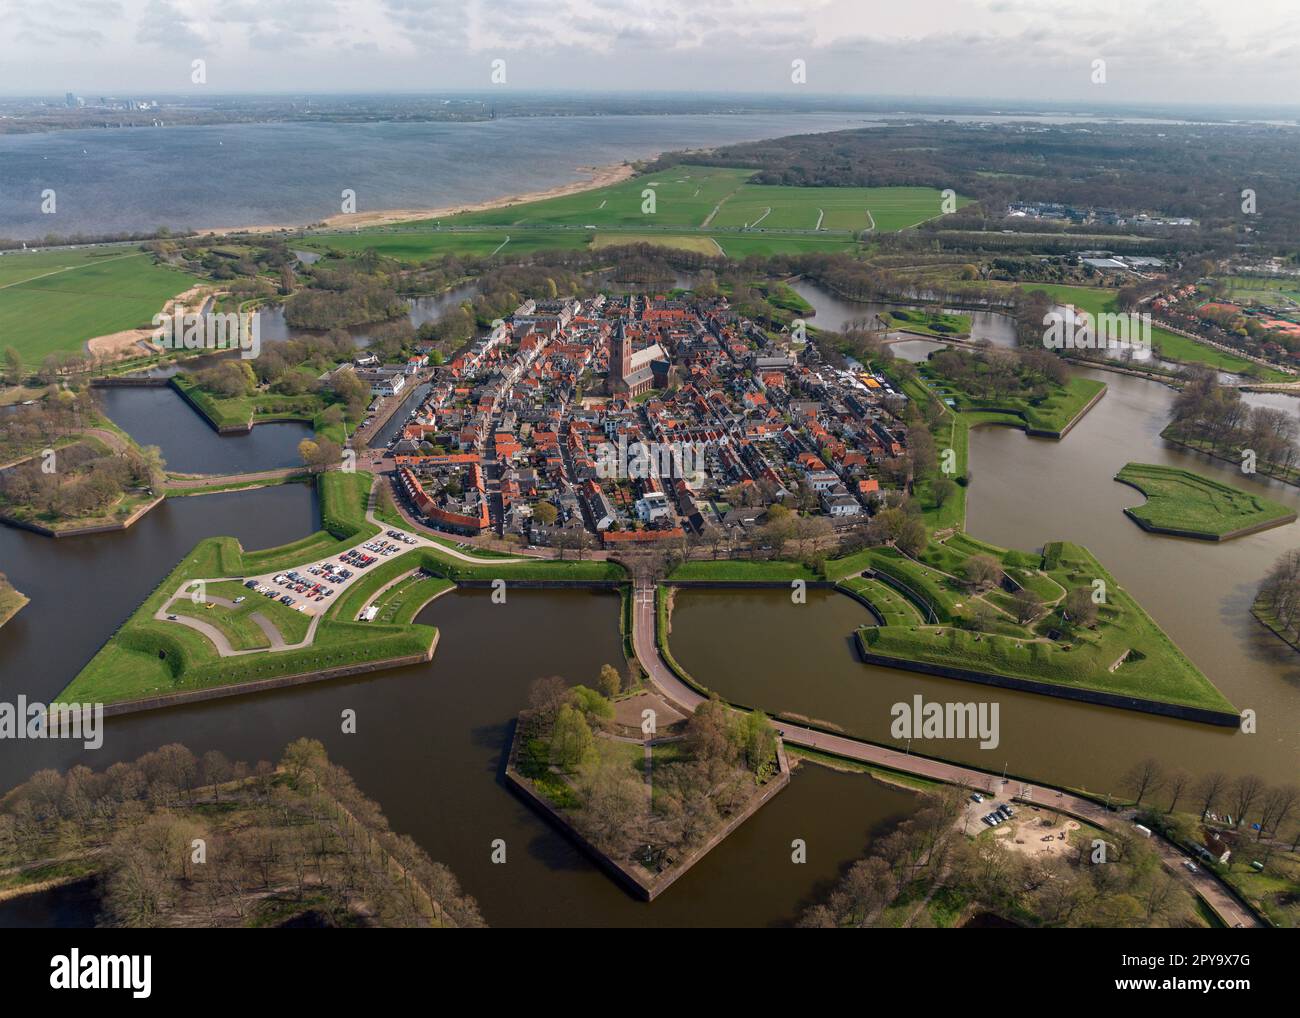 Naarden es una encantadora ciudad en los Países Bajos conocida por su fortaleza en forma de estrella bien conservada, foso y arquitectura histórica. Los visitantes pueden disfrutar de t Foto de stock